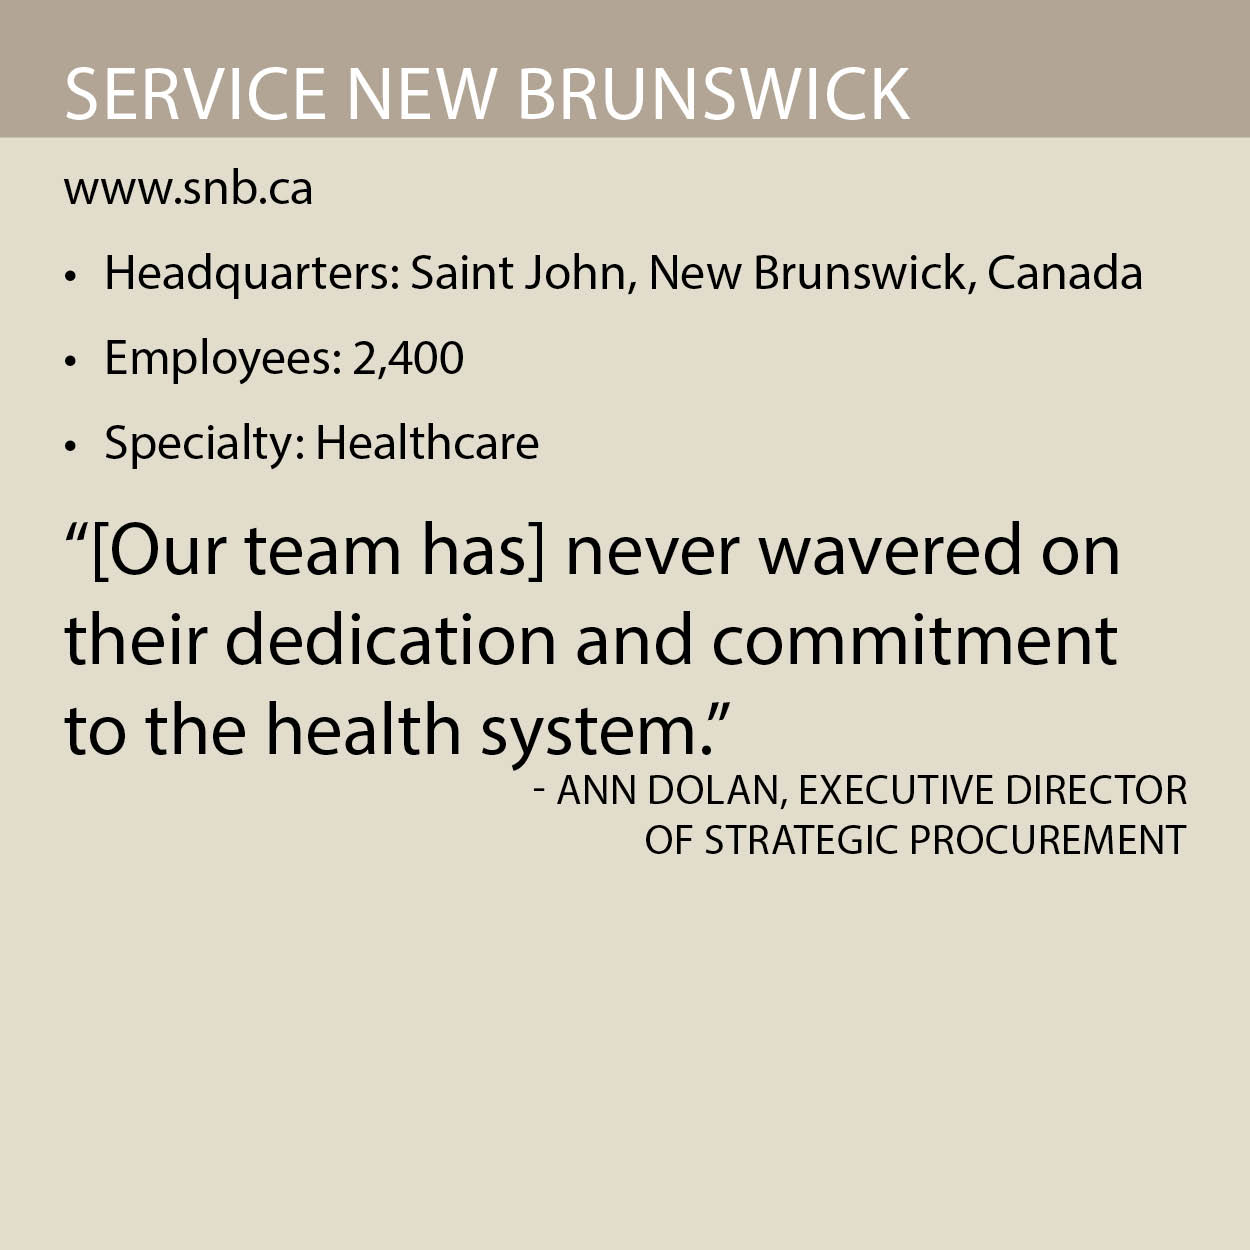 Service New Brunswick fact box